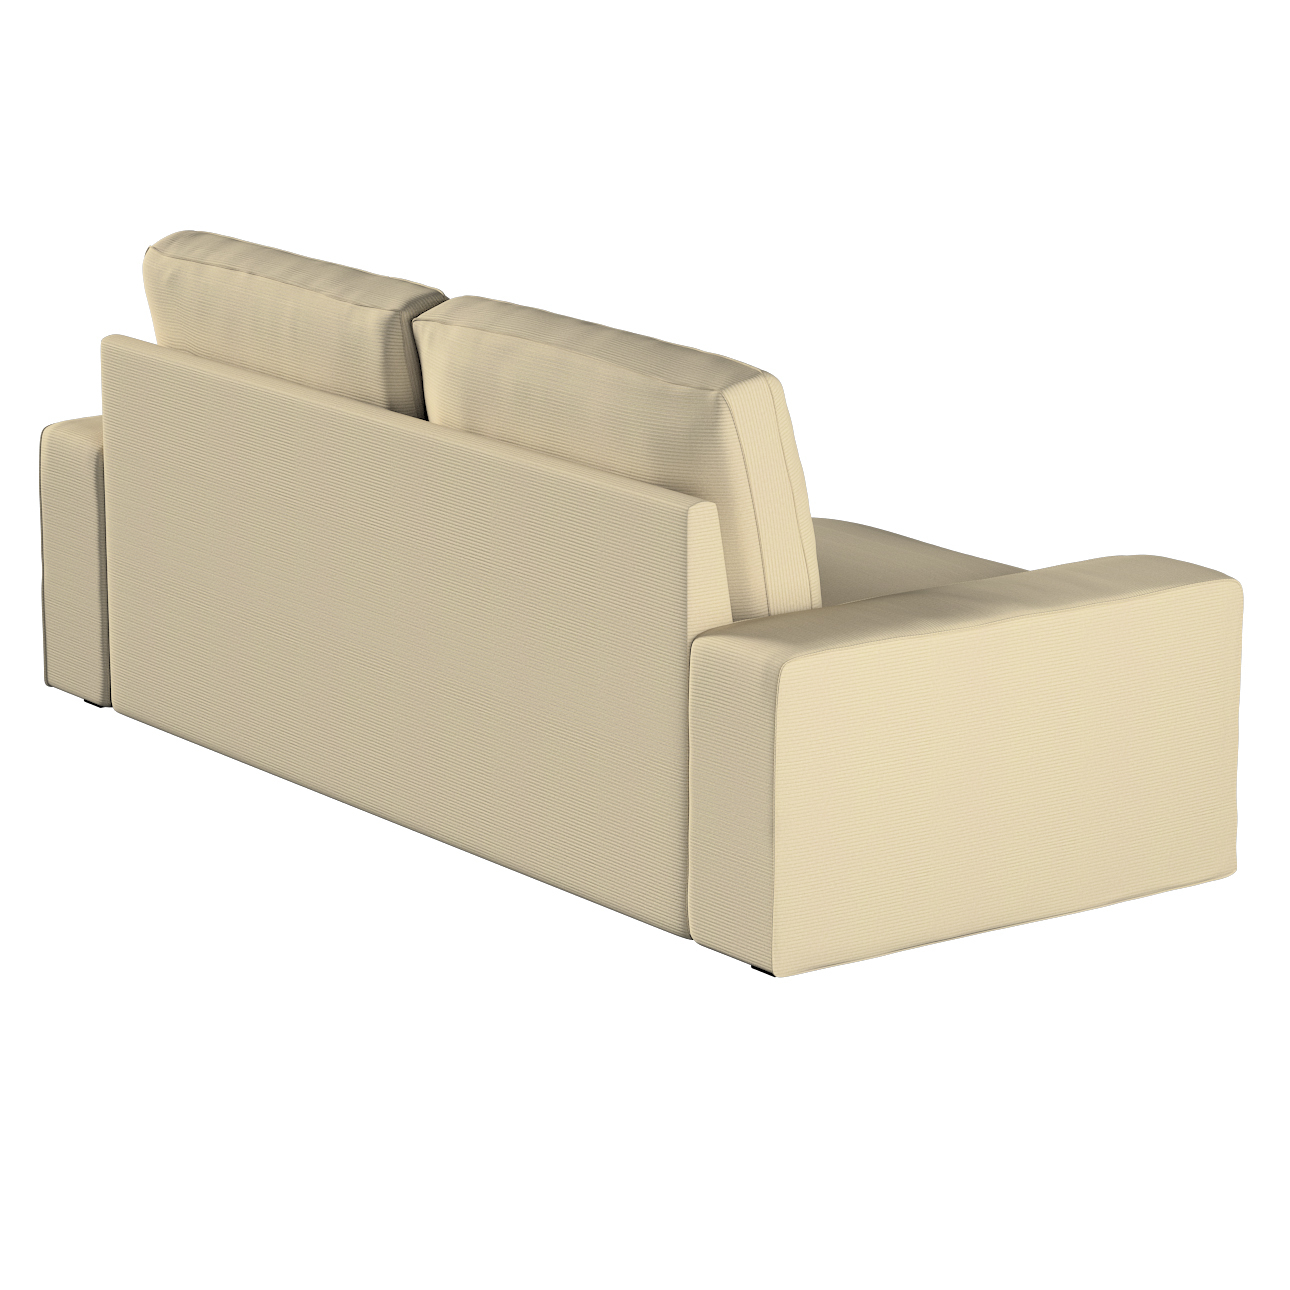 Bezug für Kivik 3-Sitzer Sofa, beige, Bezug für Sofa Kivik 3-Sitzer, Manche günstig online kaufen